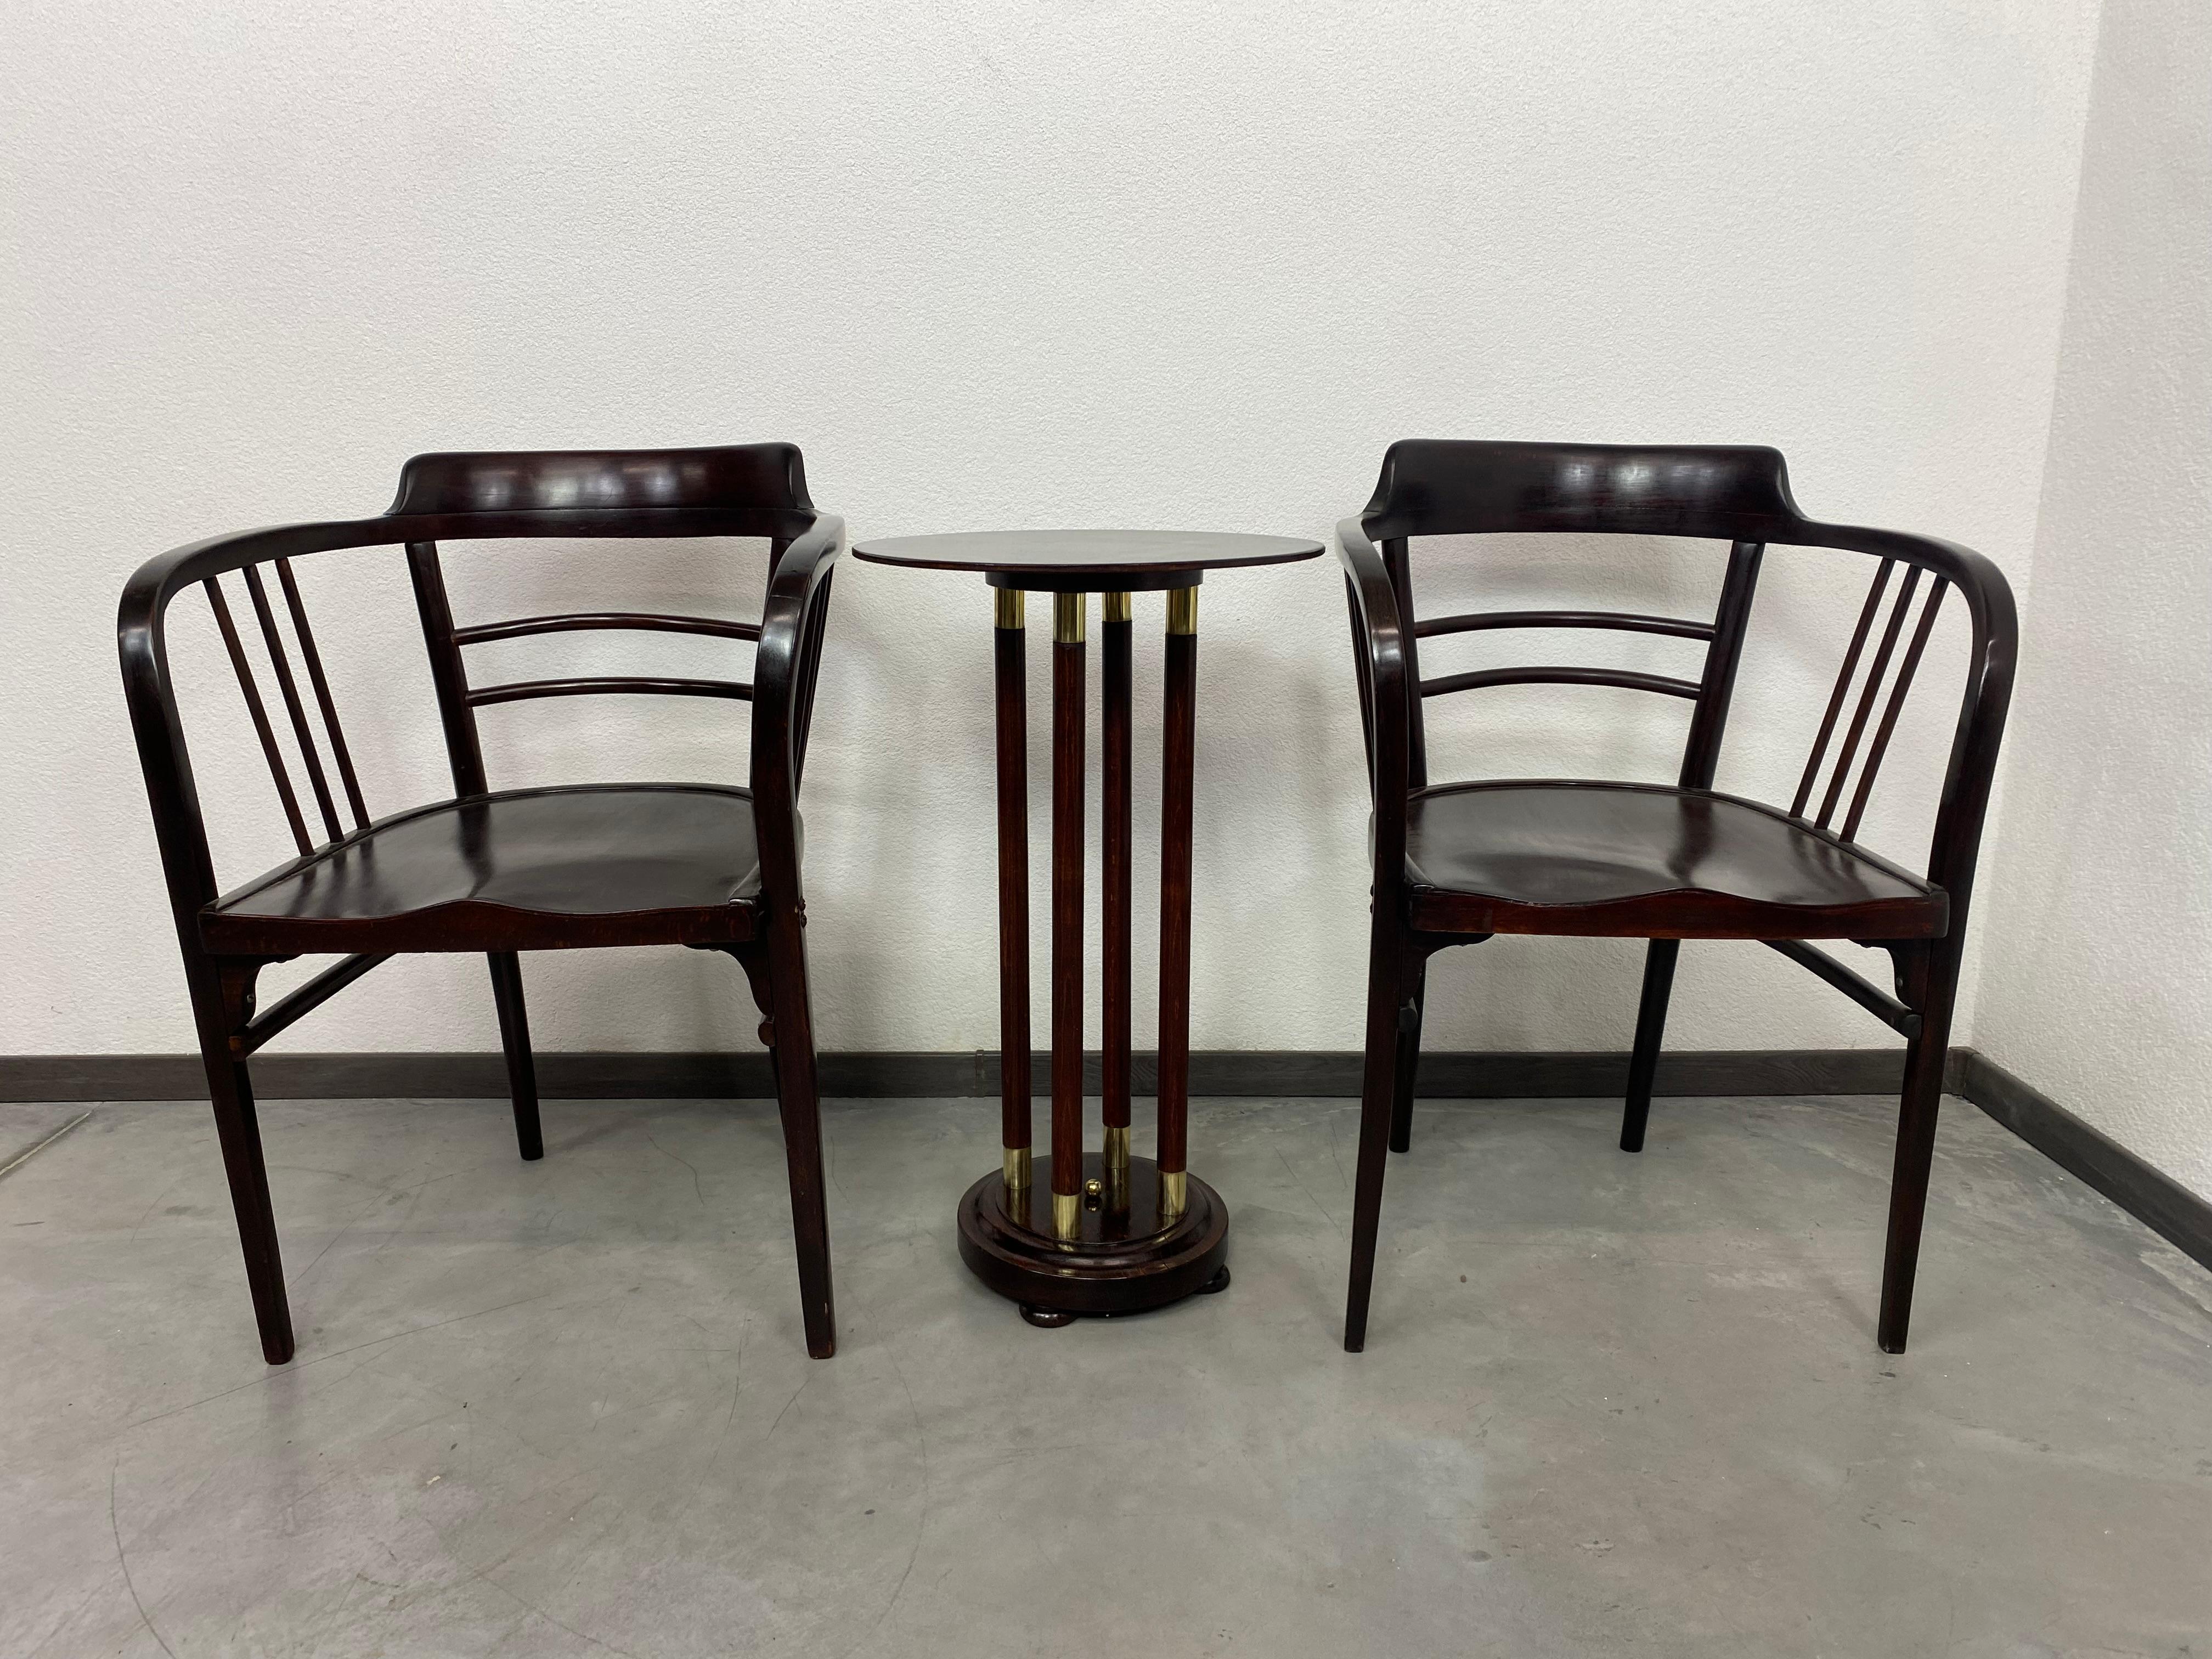 Fauteuils en bois courbé de la Sécession par Otto Wagner pour Thonet. Les fauteuils ont été restaurés dans le passé, ils ont besoin d'être raffermis, ils sont un peu bancals.